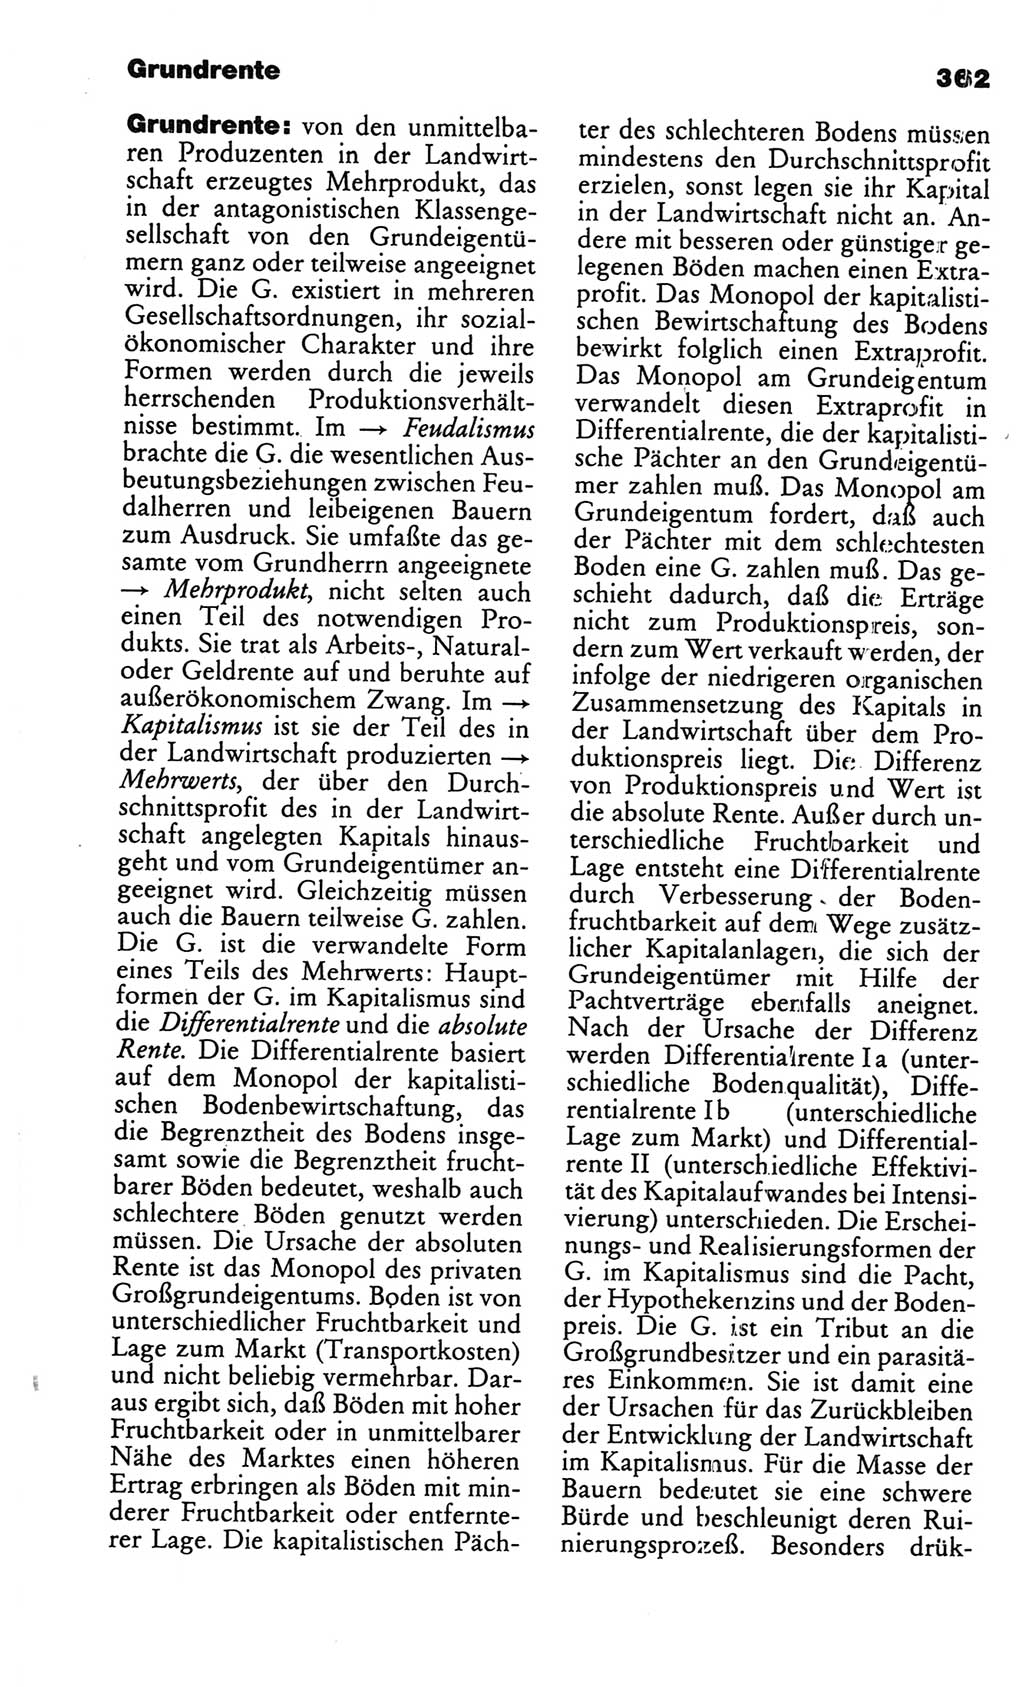 Kleines politisches Wörterbuch [Deutsche Demokratische Republik (DDR)] 1986, Seite 362 (Kl. pol. Wb. DDR 1986, S. 362)